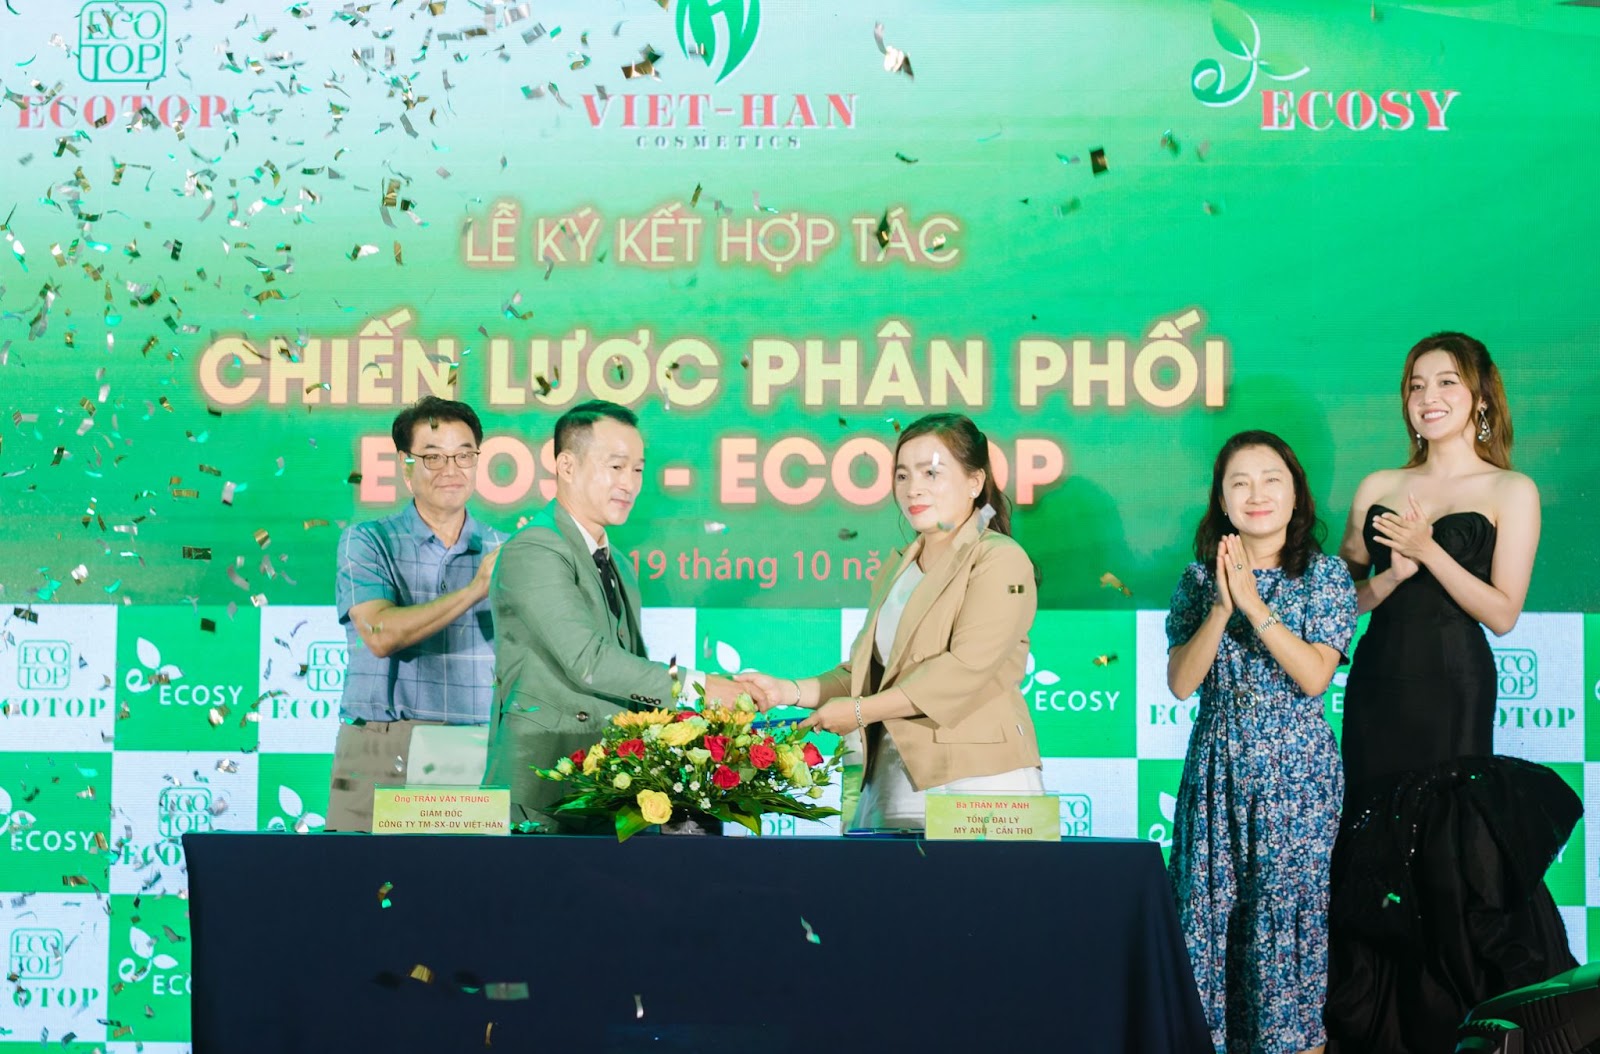 Theo chân Á hậu Huyền My khám phá dòng sản phẩm mới thương hiệu Ecosy - Ecotop - 4